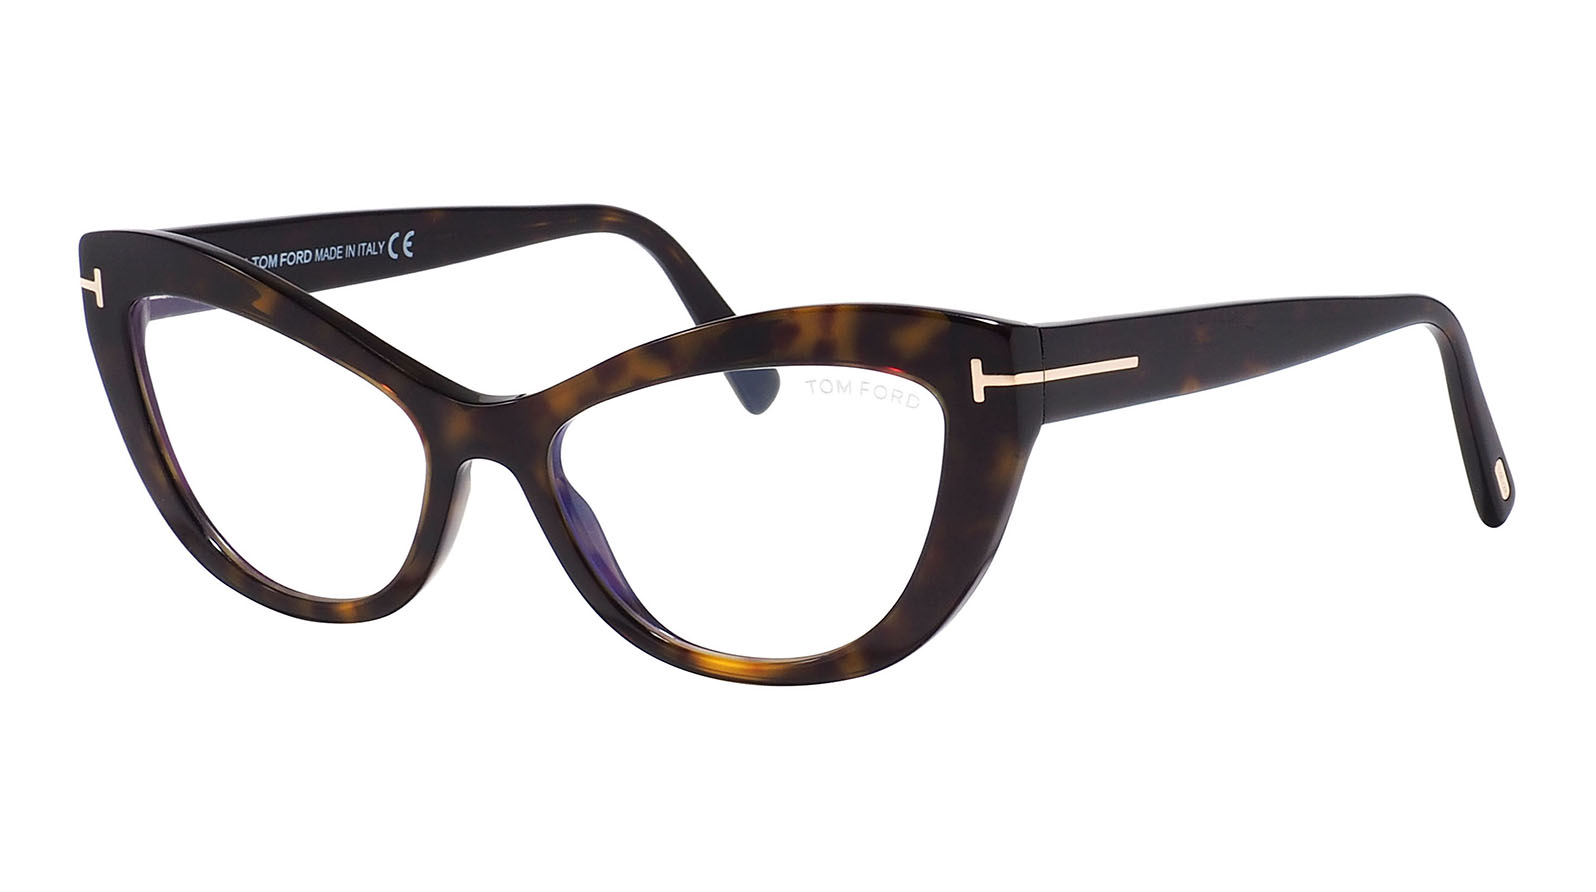 Tom Ford 5765-B 052 пресбиопические очки с защитой от синего света безрамочные многоугольные градиентные пресбиопические очки высокой четкости